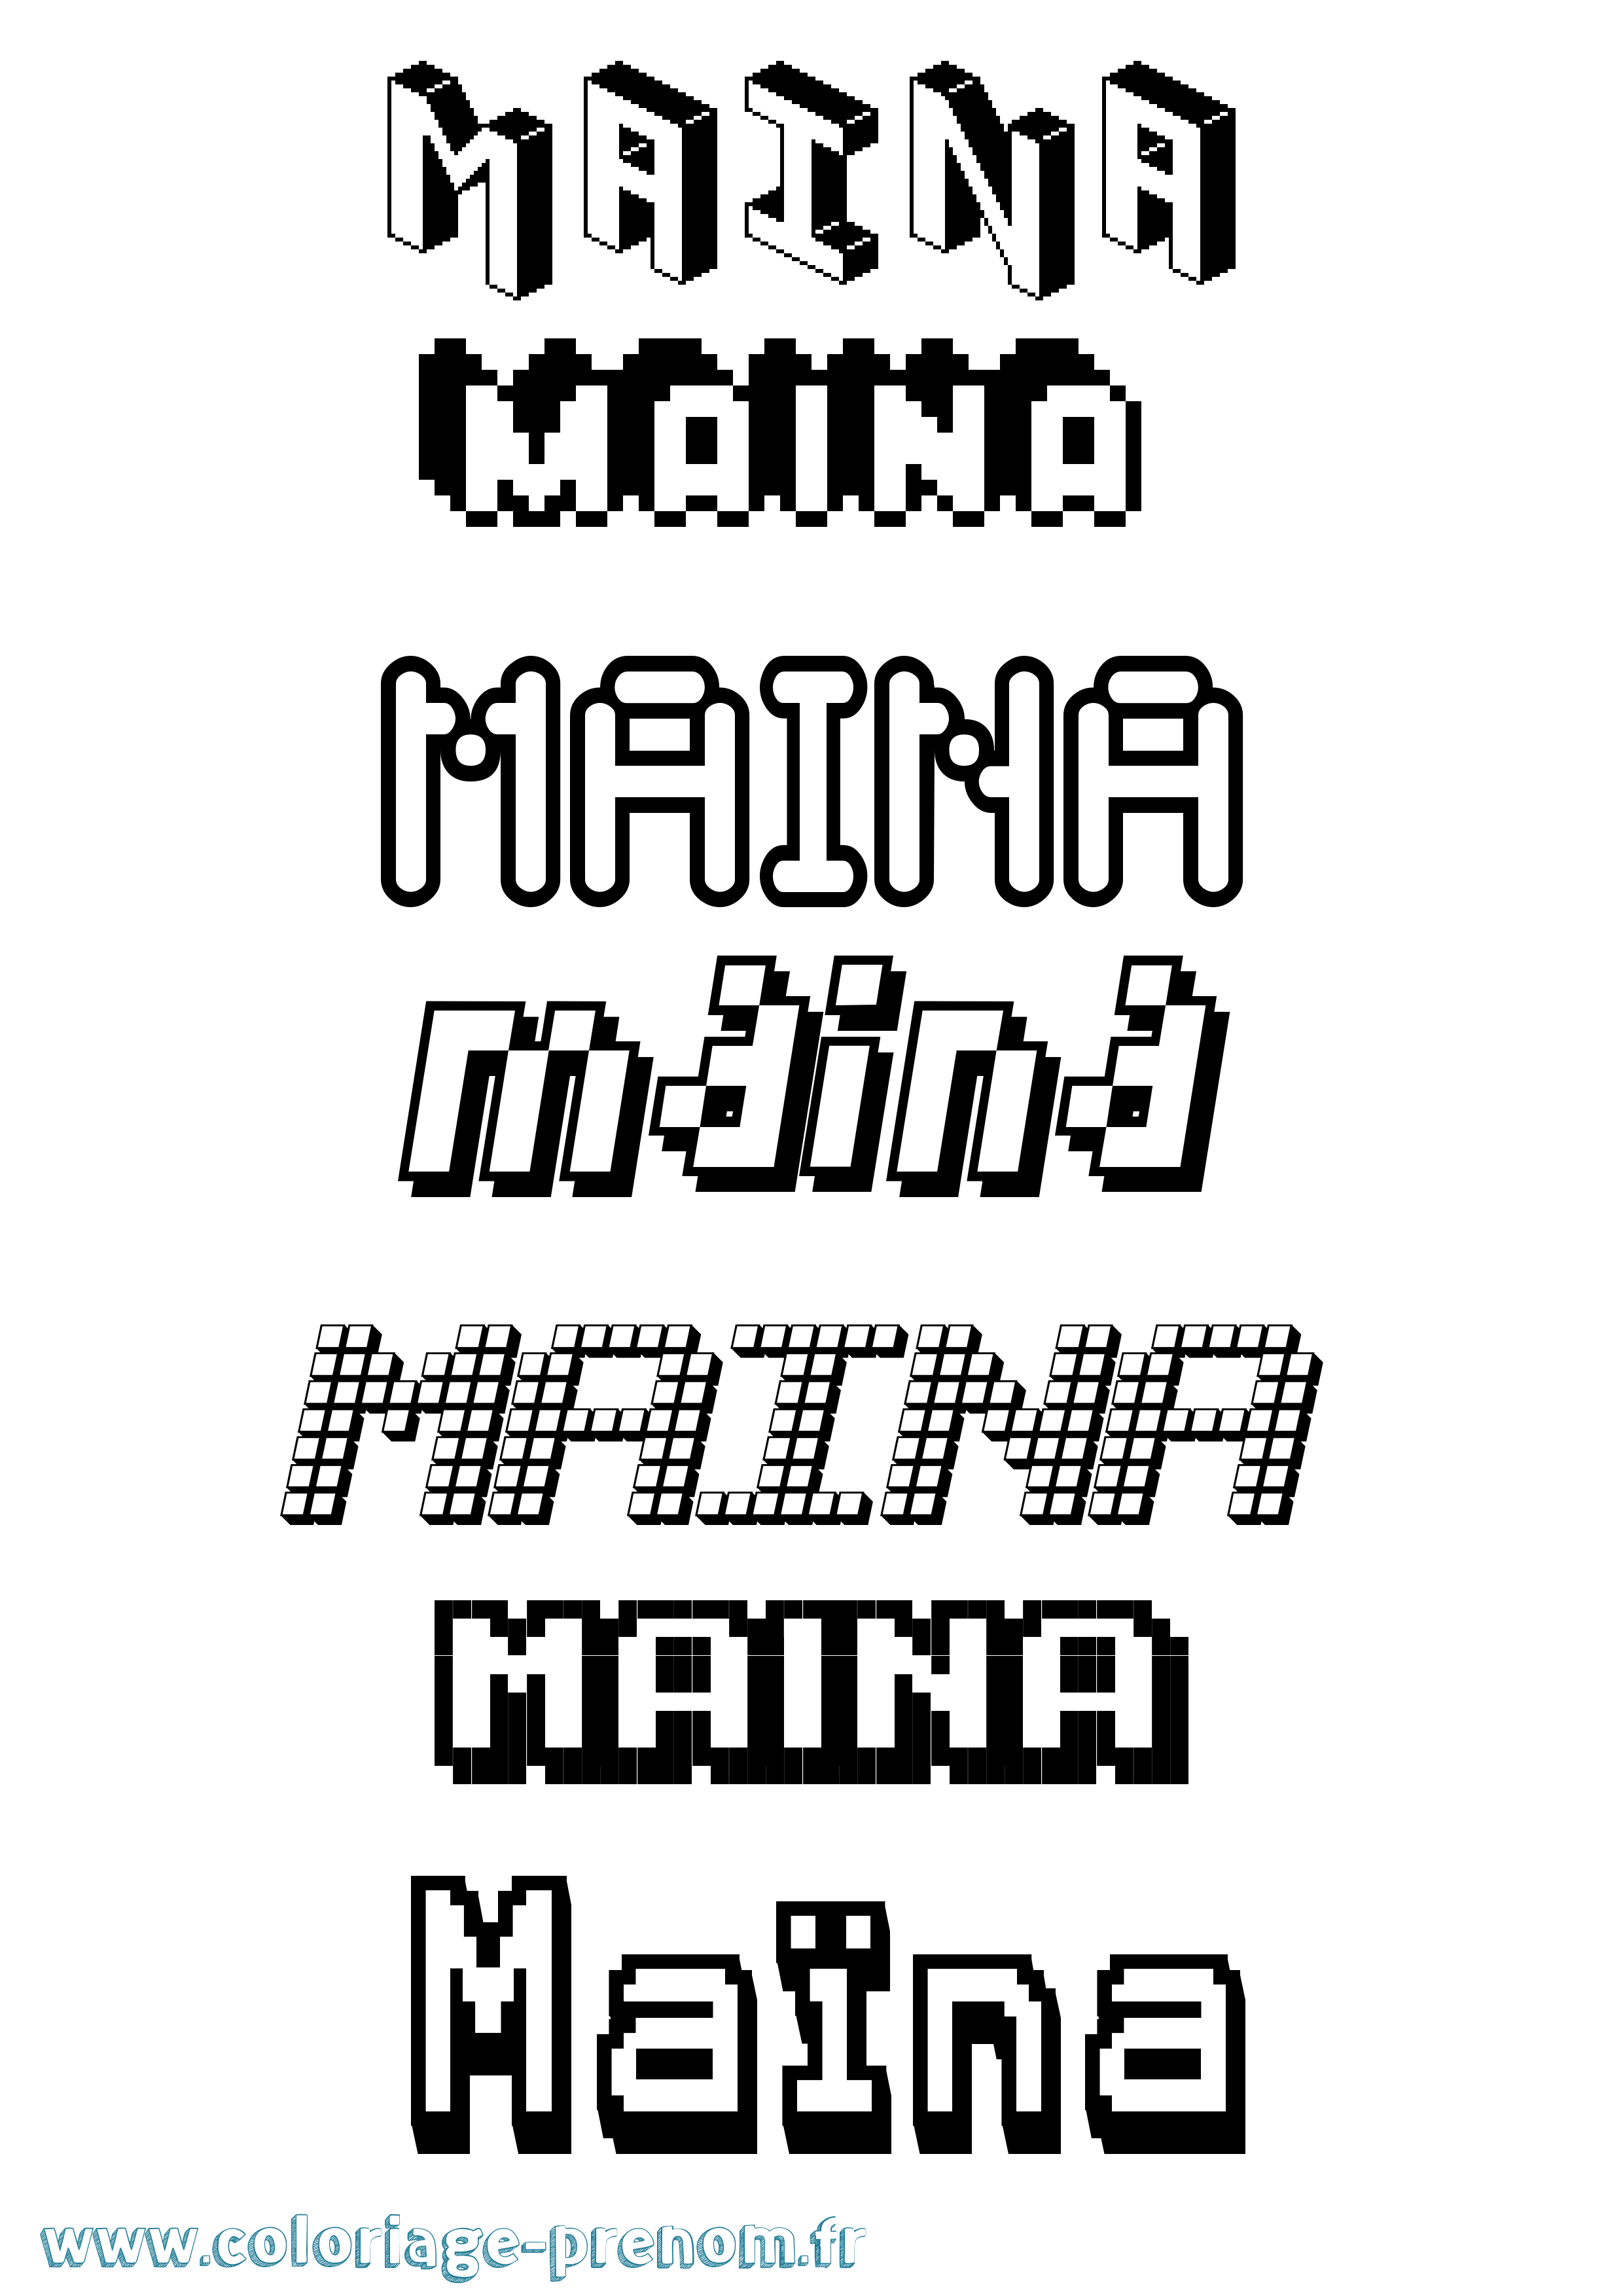 Coloriage prénom Maïna Pixel